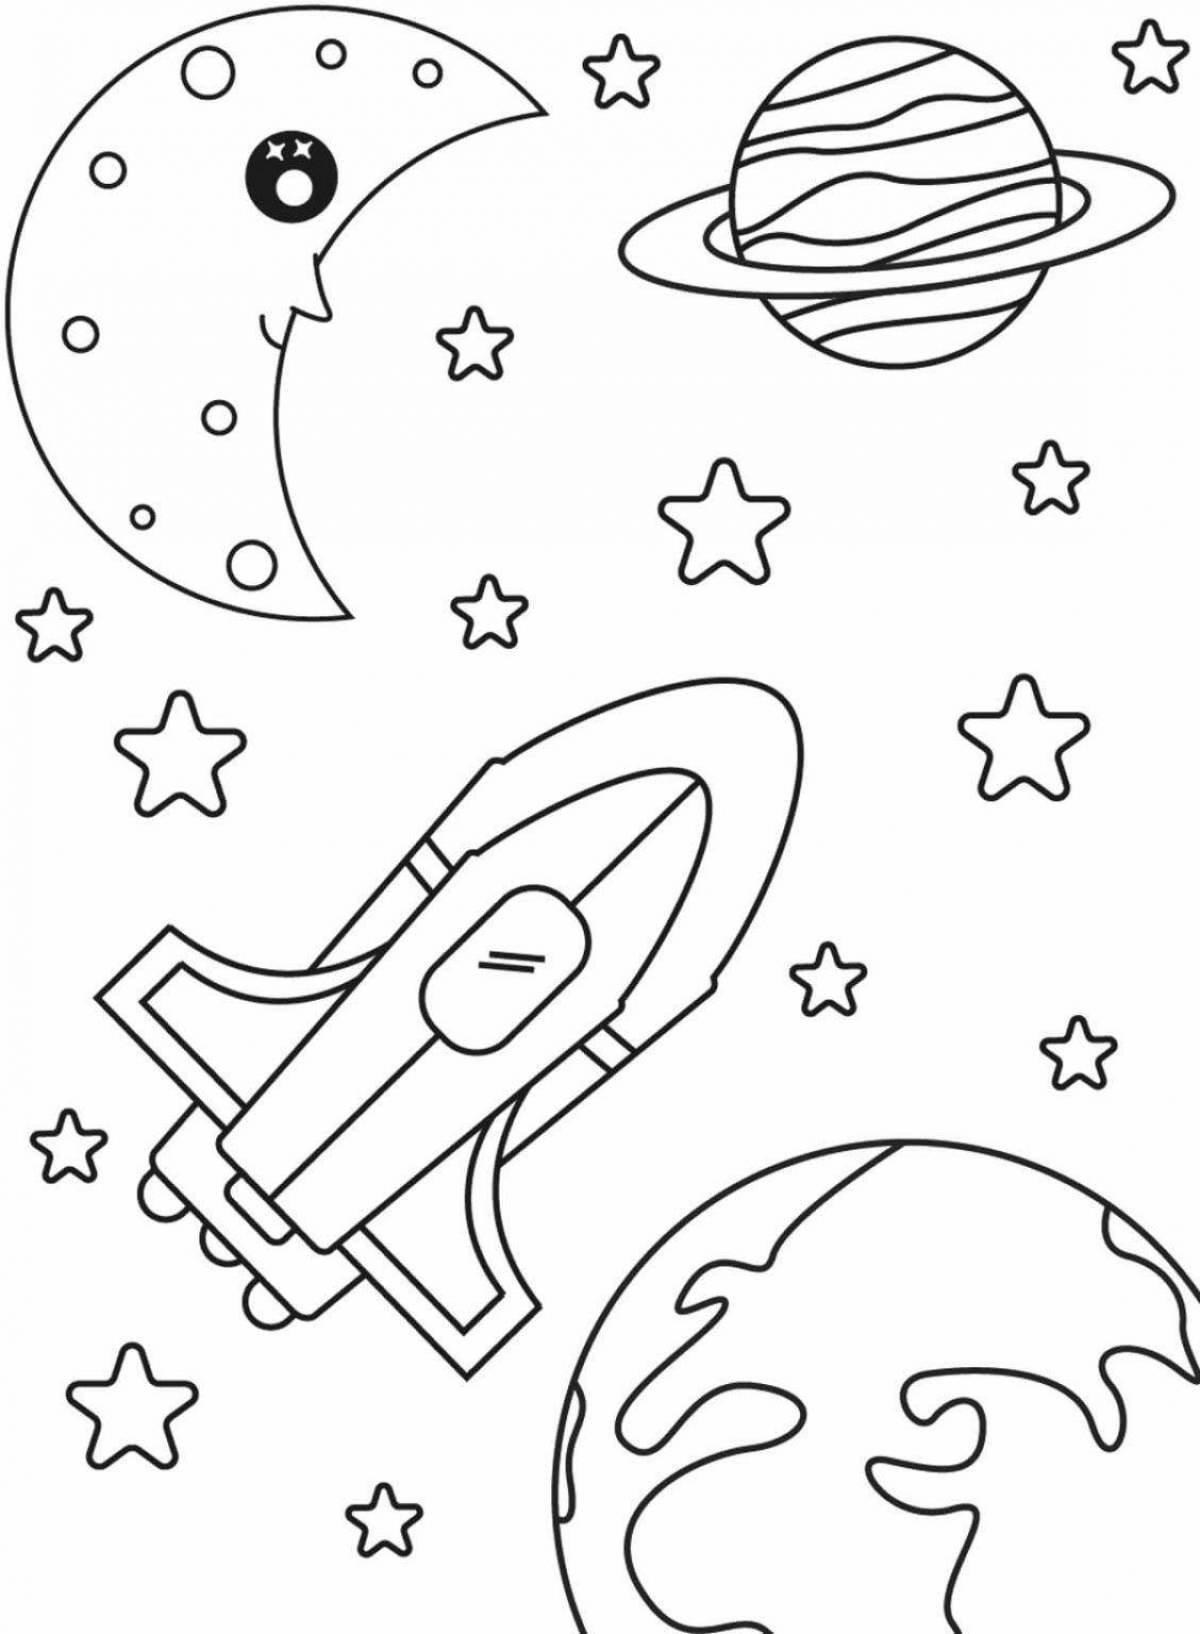 Сказочная космическая раскраска для детей 4-5 лет